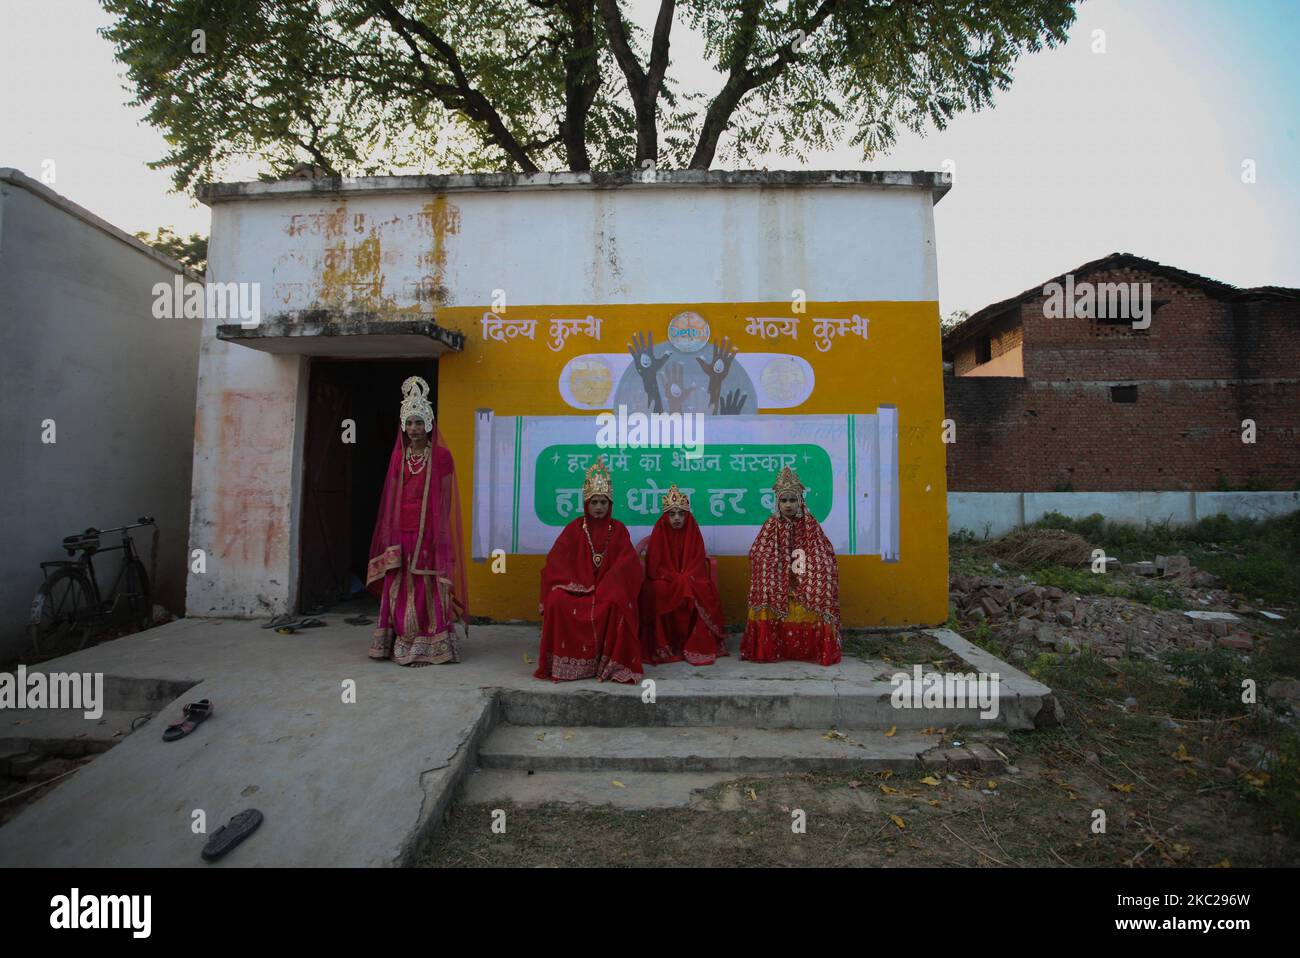 Les artistes habillés comme le Dieu hindou RAM, épouse Déesse Sita et frère Laxman, se préparent à exécuter la traditionnelle Ramleela, une pièce racontant la vie du Dieu hindou RAM, devant le festival Dussehra, pendant le virus corona de Covid-19 pandamic dans la banlieue d'Allahabad, Inde sur 21 octobre 2020. Dussehra commémore le triomphe du Seigneur Rama sur le démon Roi Ravana, marquant la victoire du bien sur le mal.(photo de Ritesh Shukla/NurPhoto) Banque D'Images